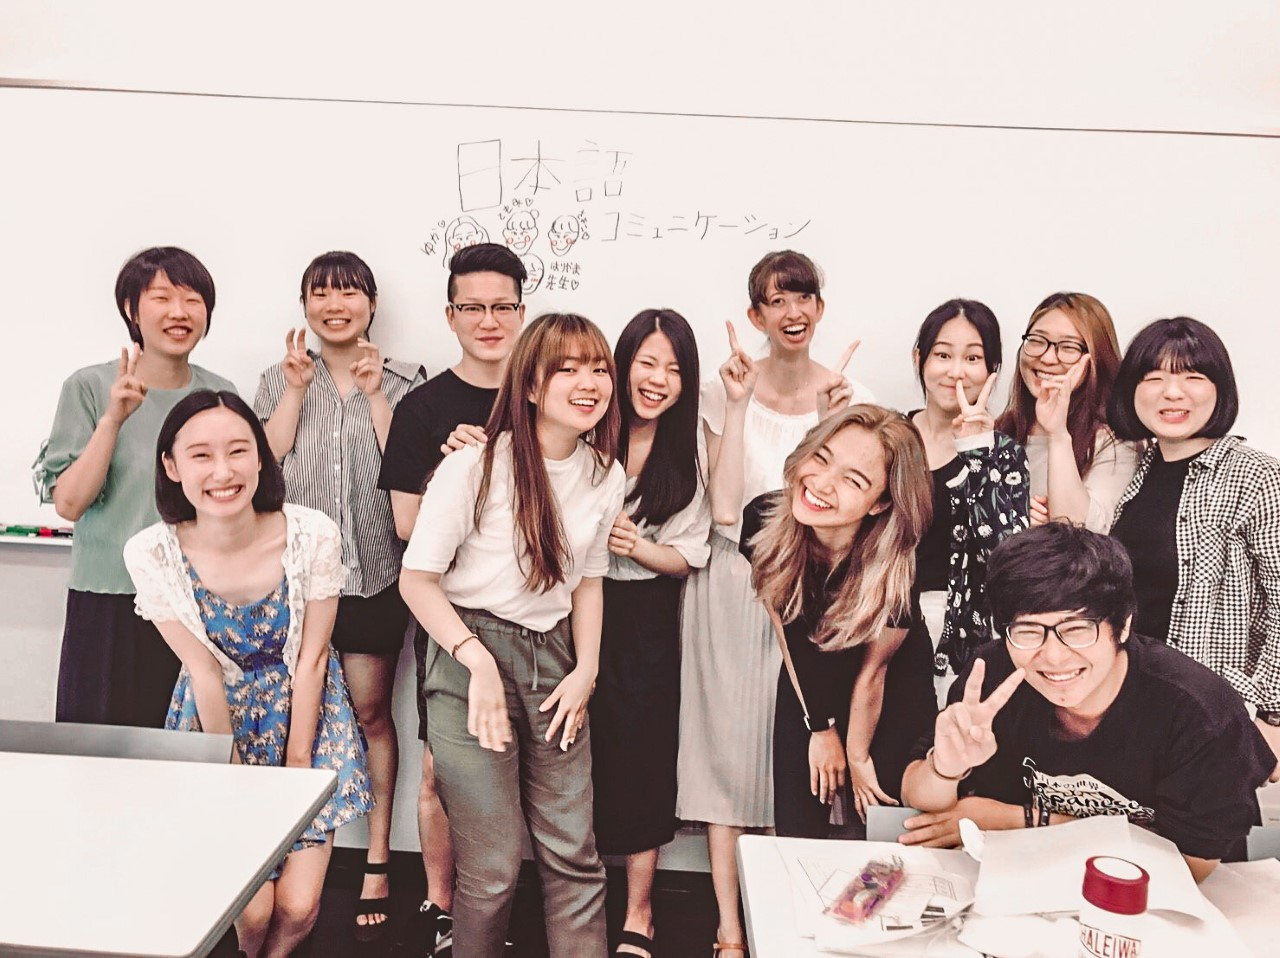 日本語コミュニケーション授業の学生たちの集合写真